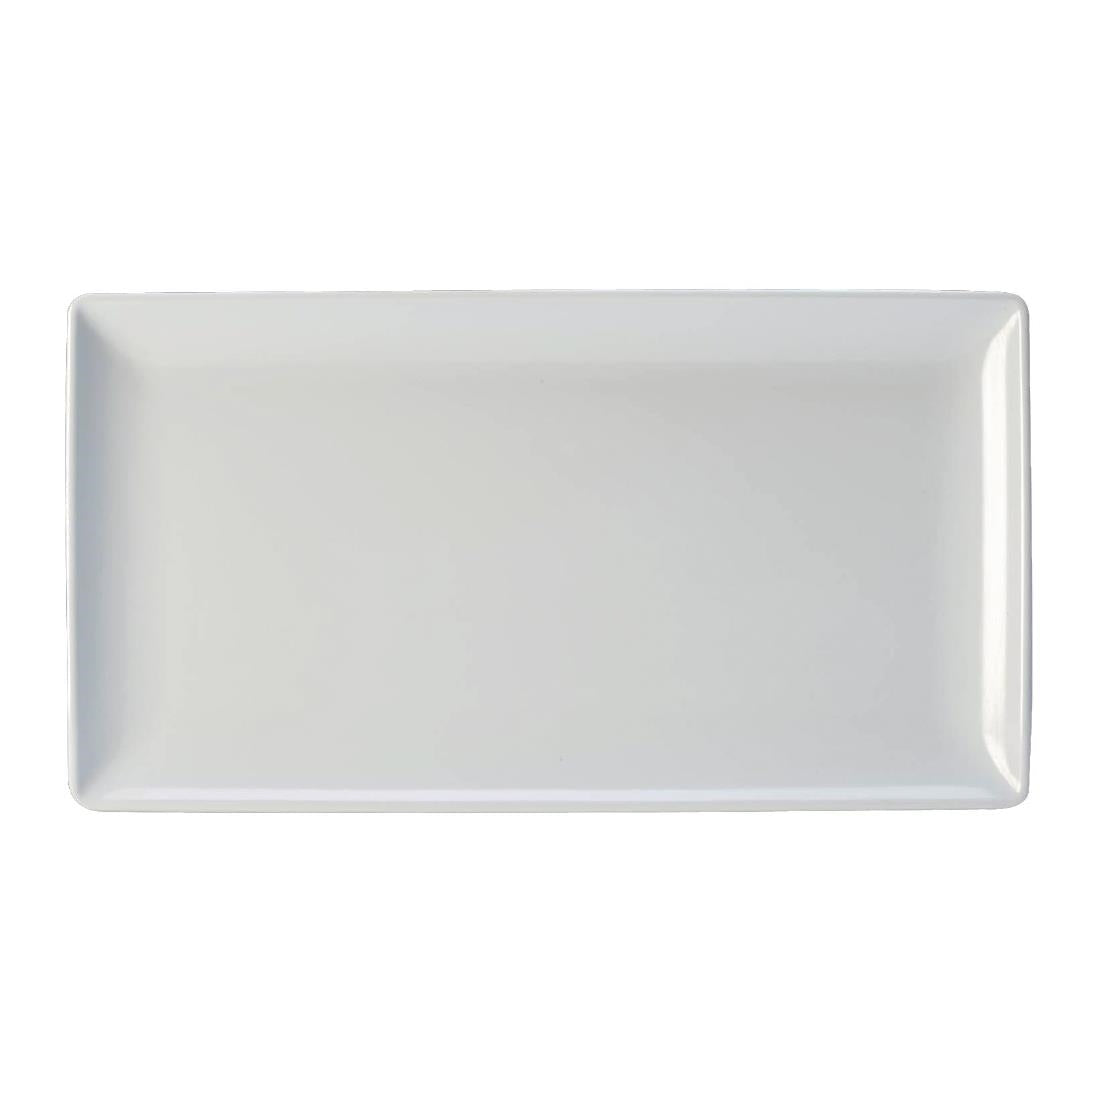 Steelite Craft Melamine Rectangular Platters White GN 1/3 (Pack of 3)